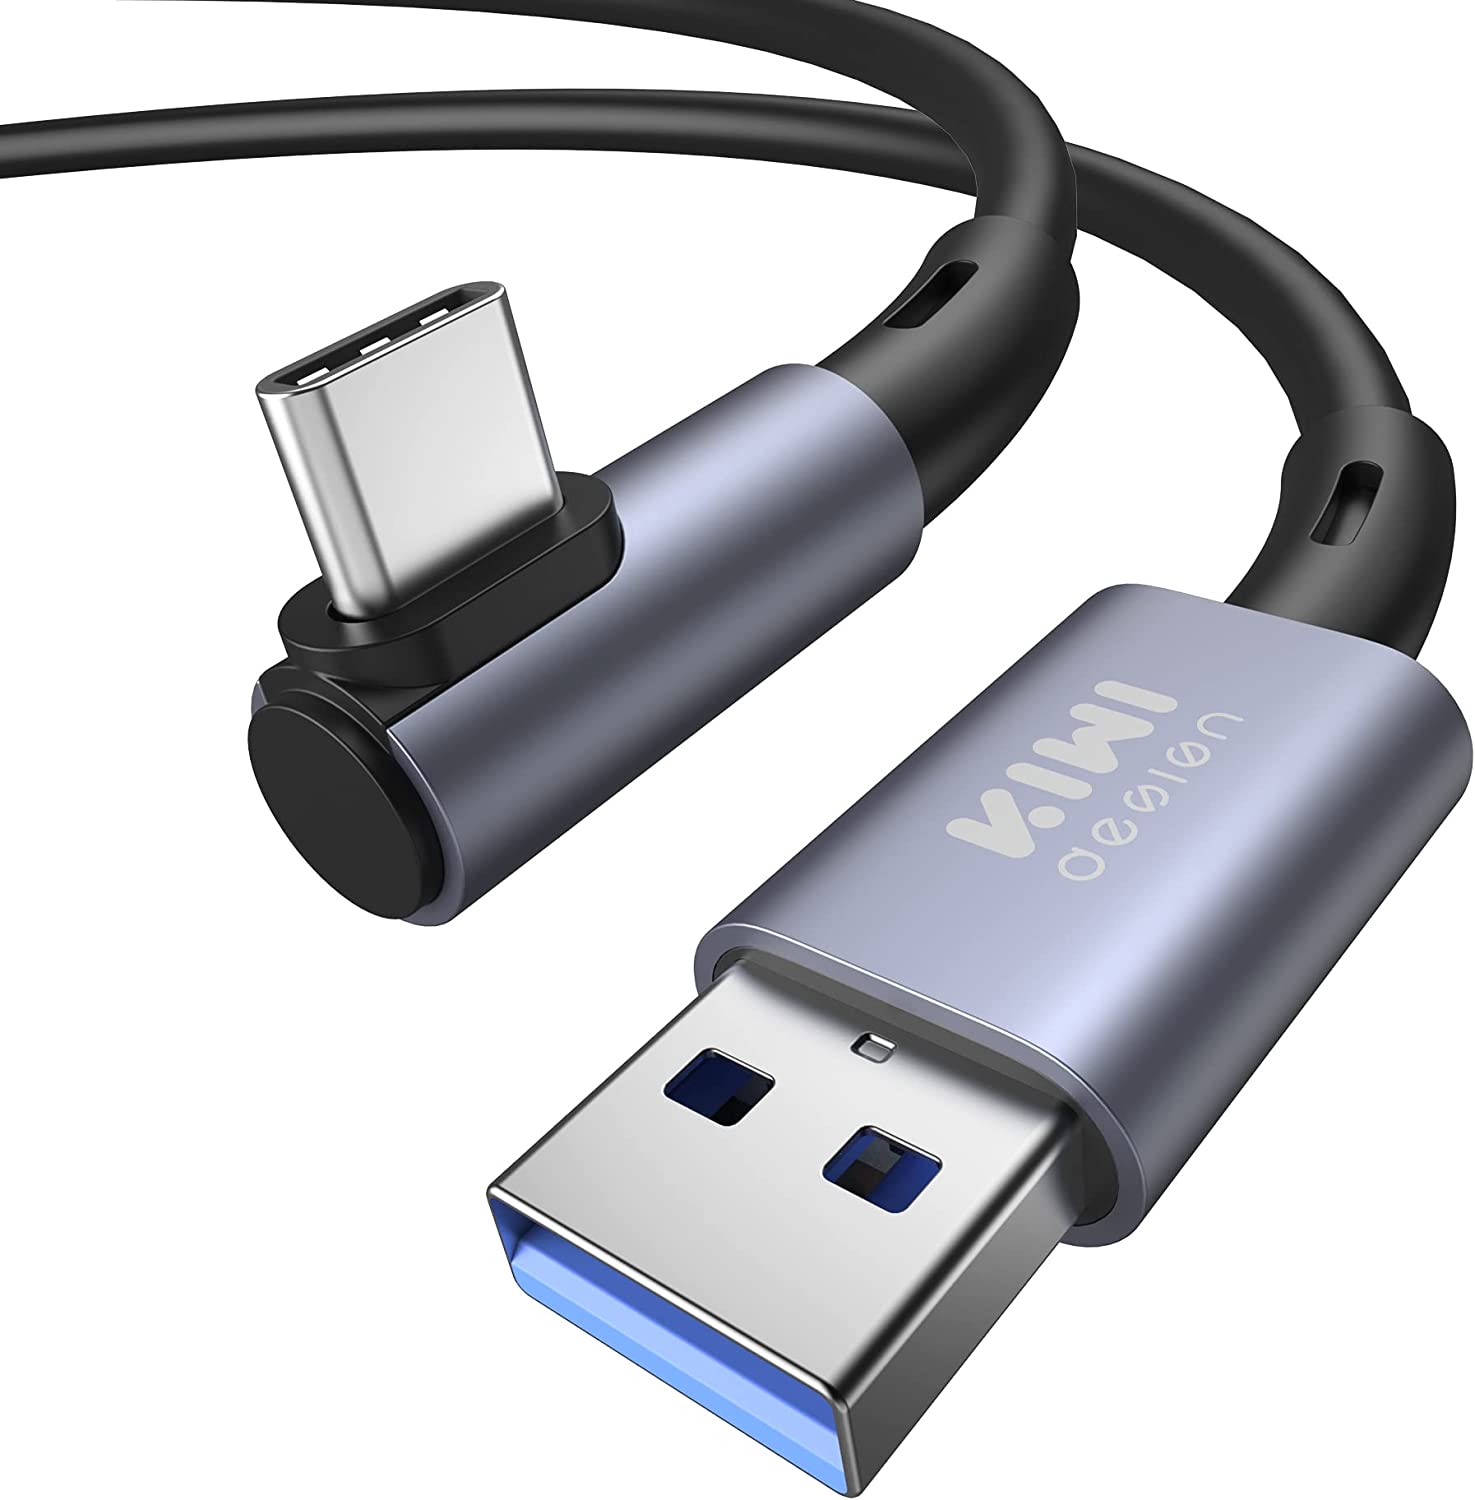 【日本代購】KIWI design 連接線3M/10FT Quest 2配件兼容,USB 3.0 PC遊戲線高速穩定(黑色)